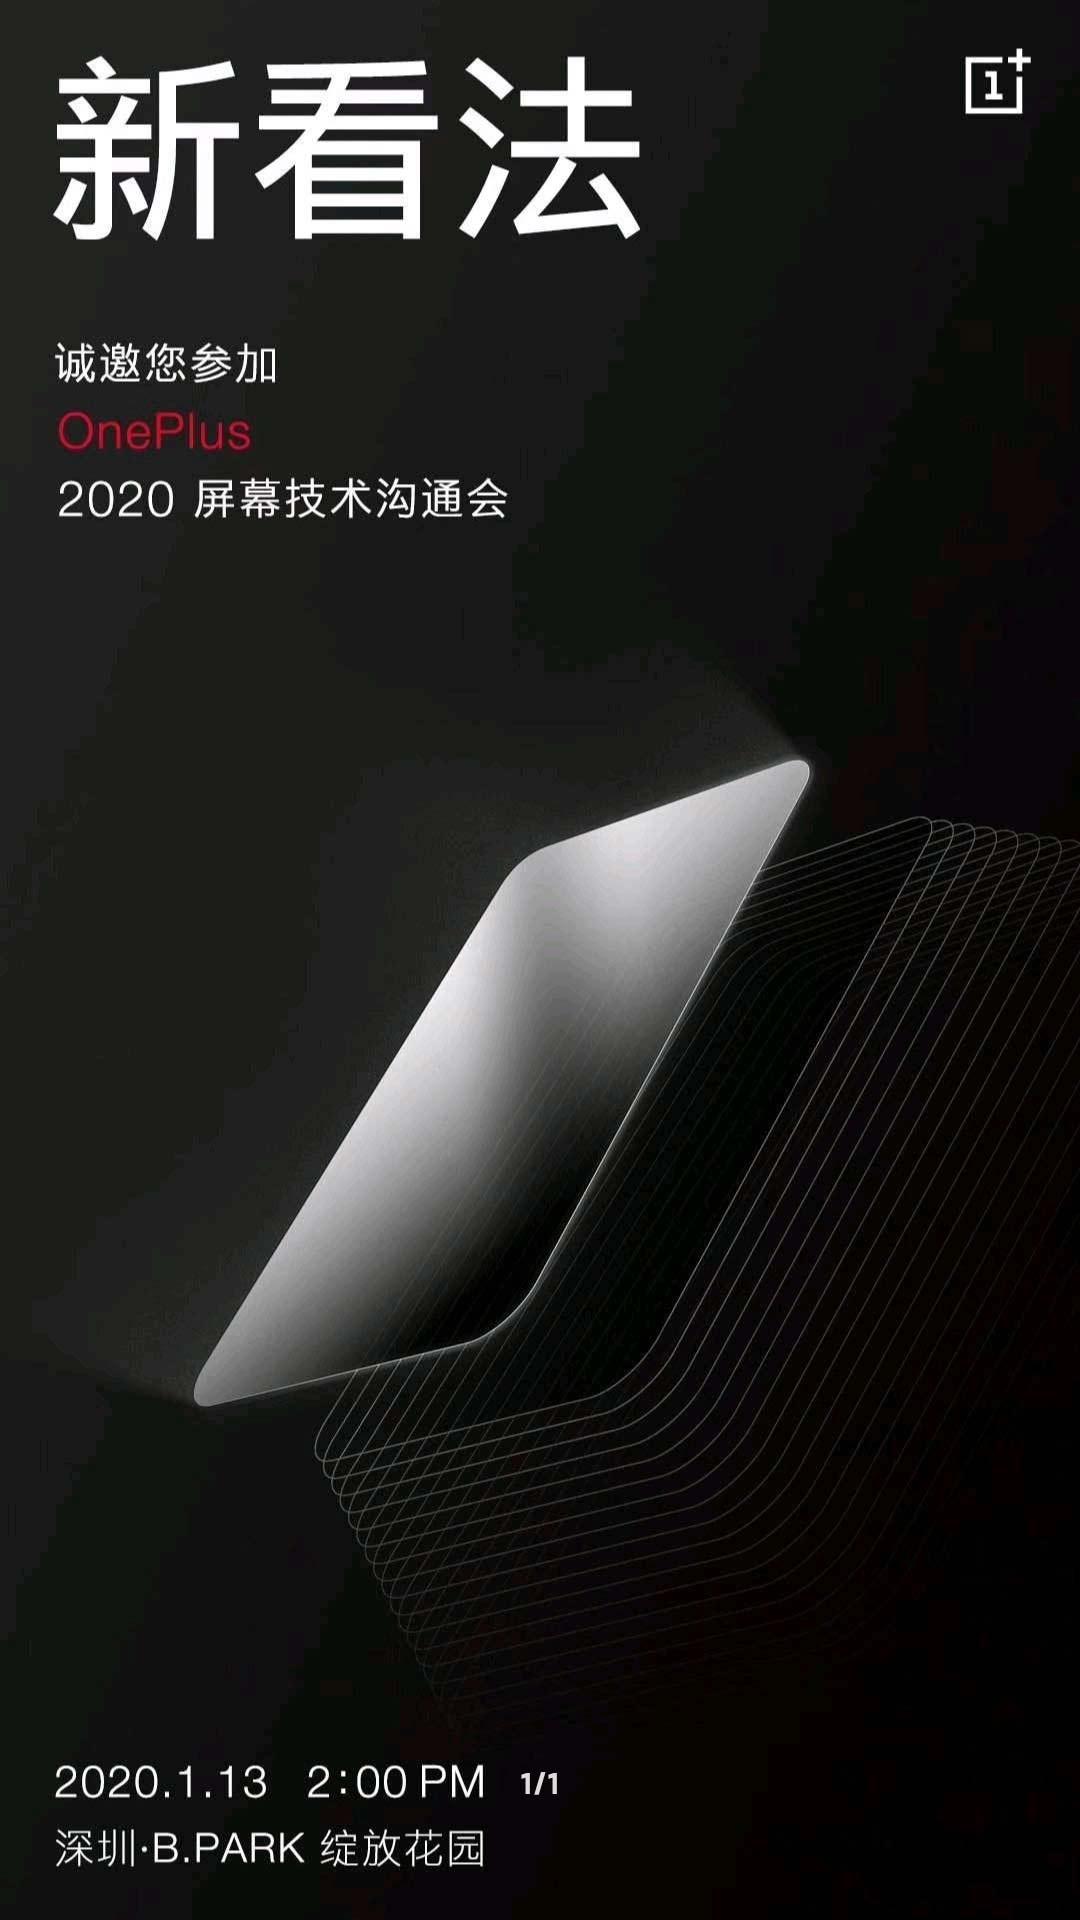 OnePlus 8 sẽ được
trang bị màn hình OLED 2K với tần số quét 120Hz